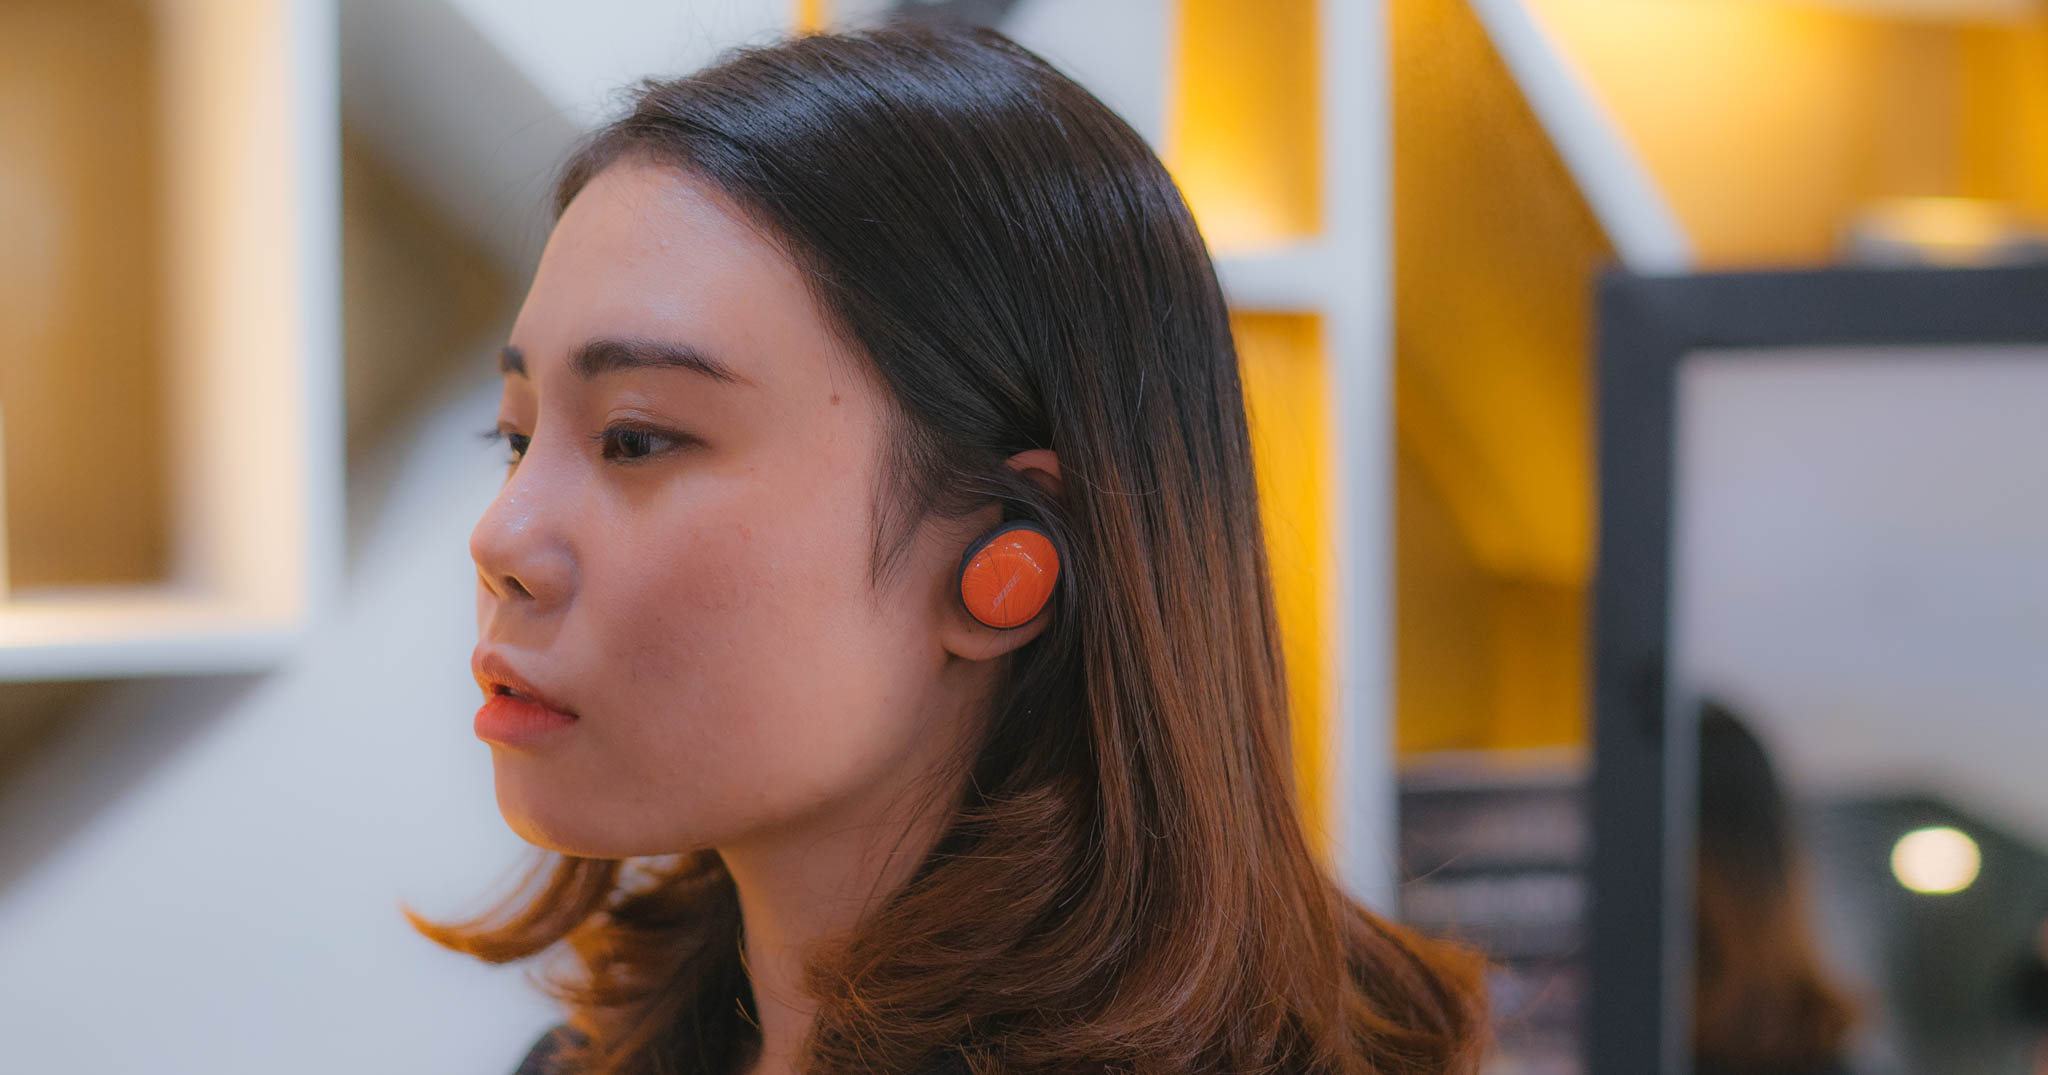 Bose ra mắt dòng tai nghe không dây SoundSport Free, pin 5 giờ, giá 5 triệu đồng